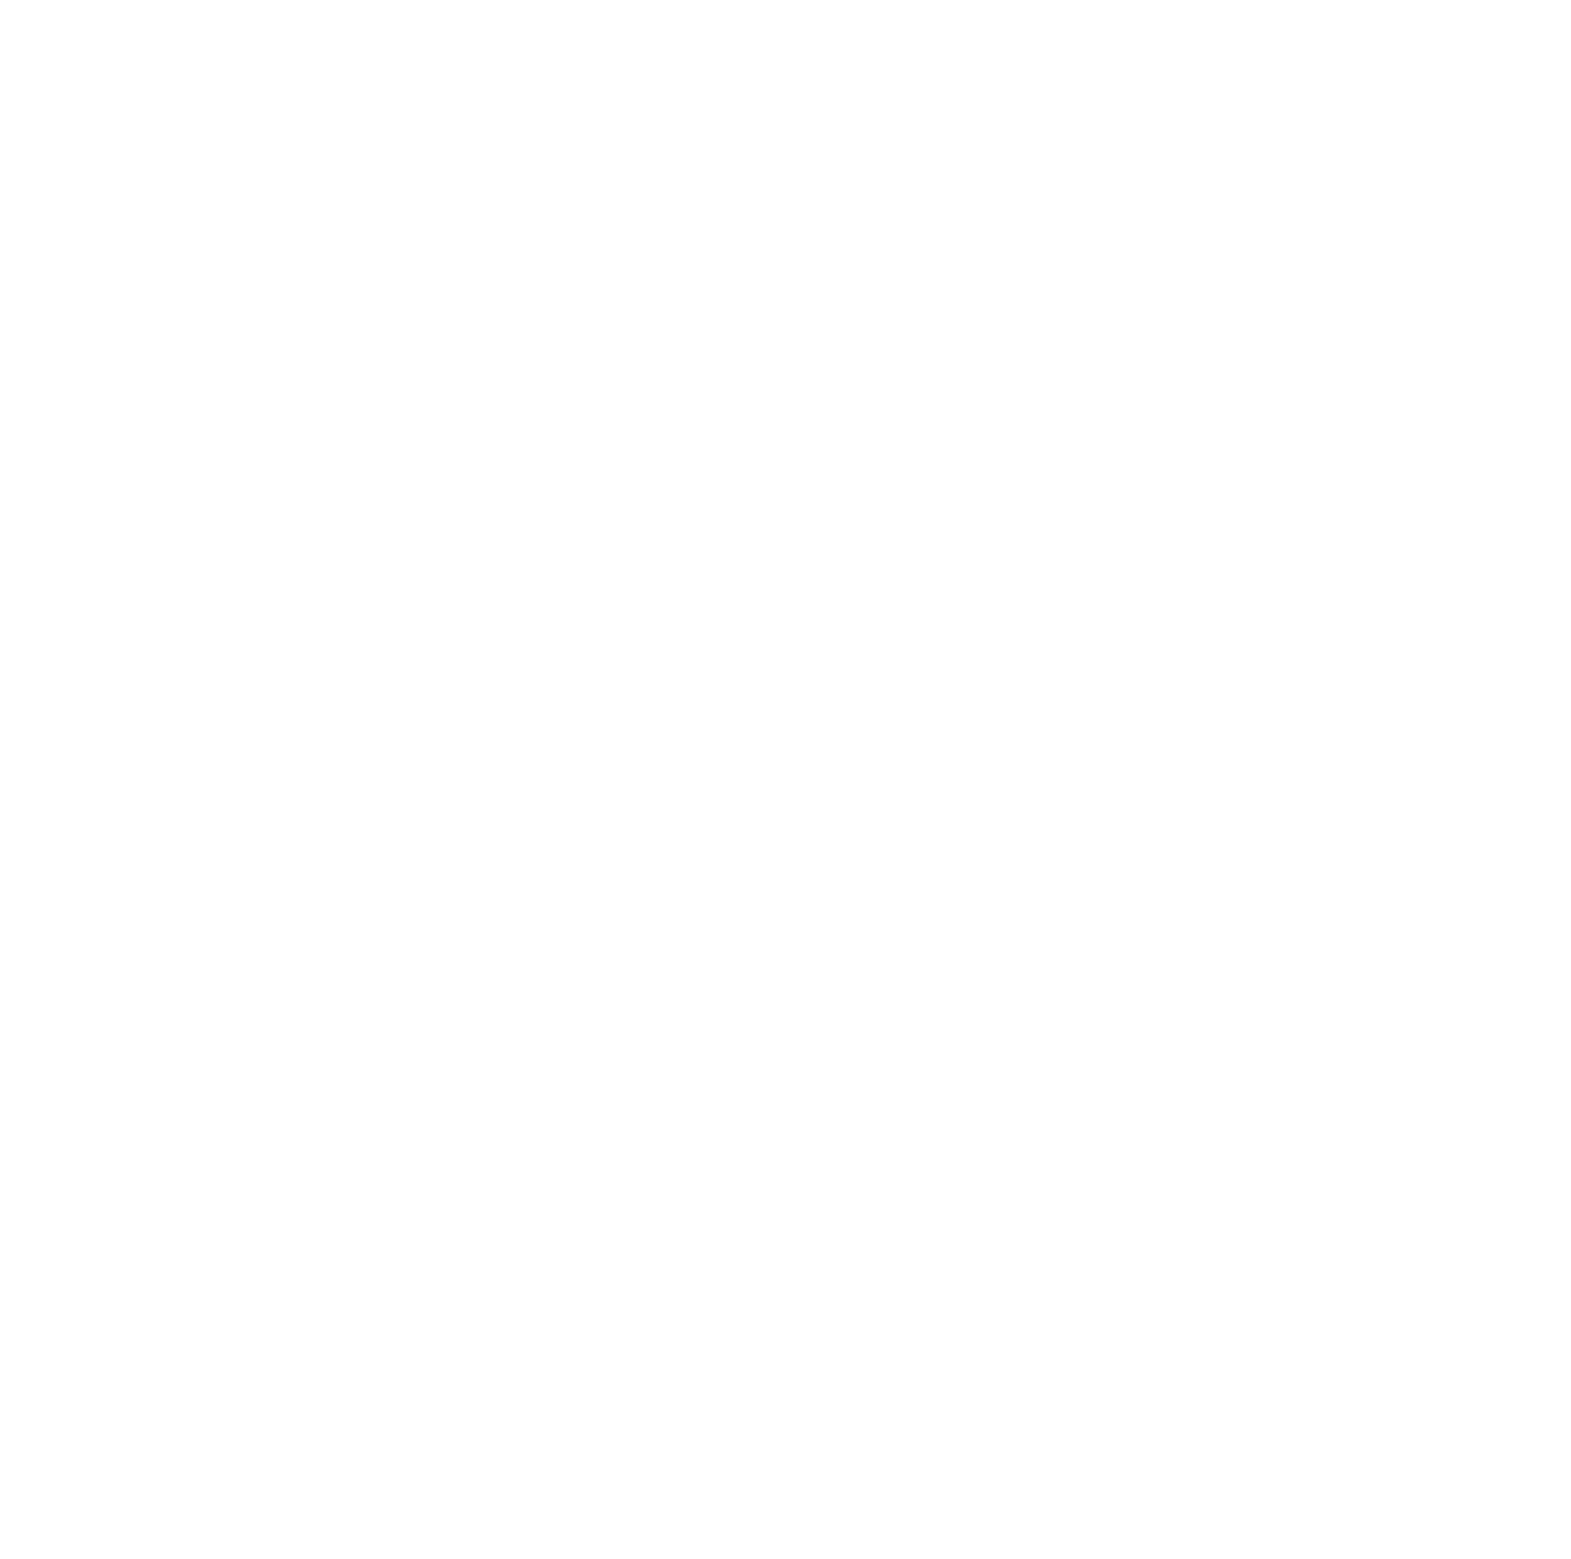 Kornit Digital logo for dark backgrounds (transparent PNG)